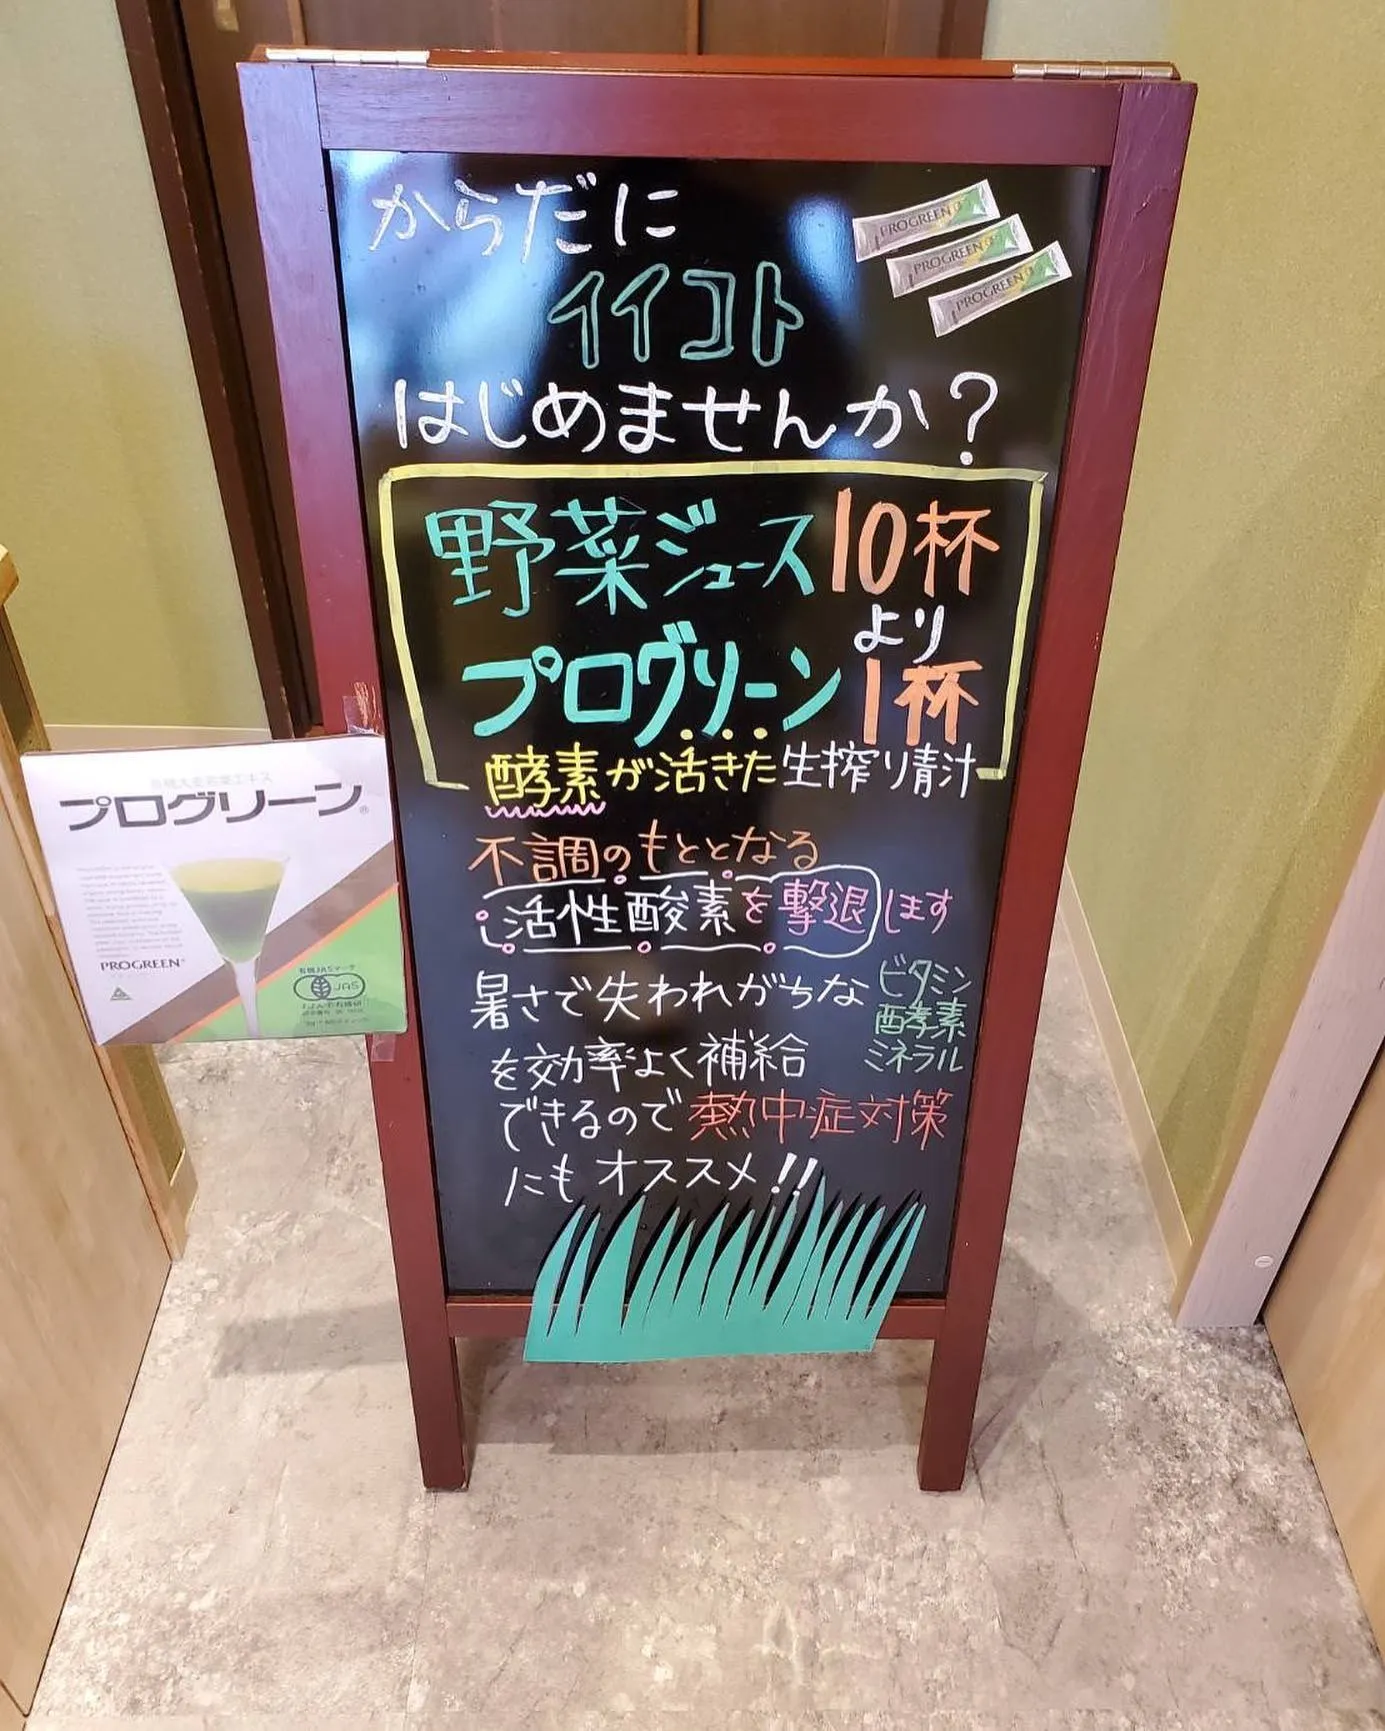 ポニー薬局長田店では8月1日〜8月31日まで【青汁祭り】を開...